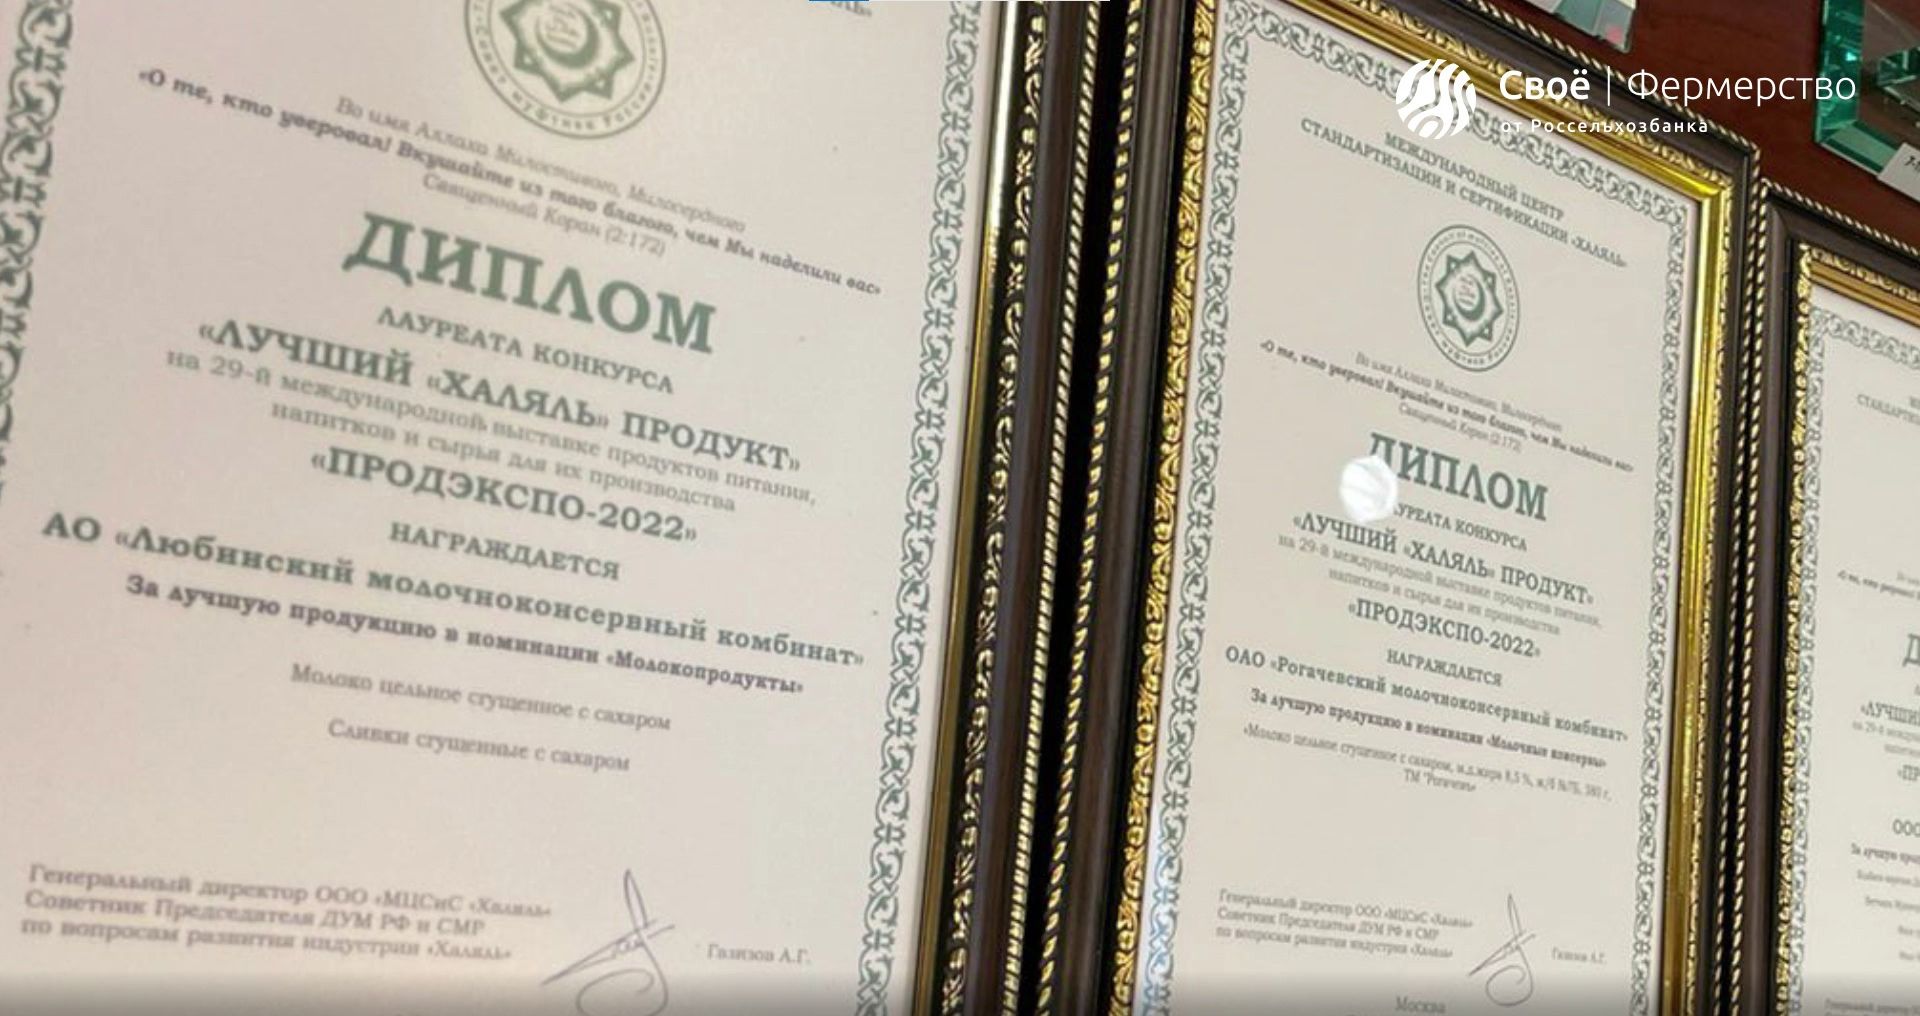 Видеорепортаж: Любинский комбинат получил сертификат «Халяль»